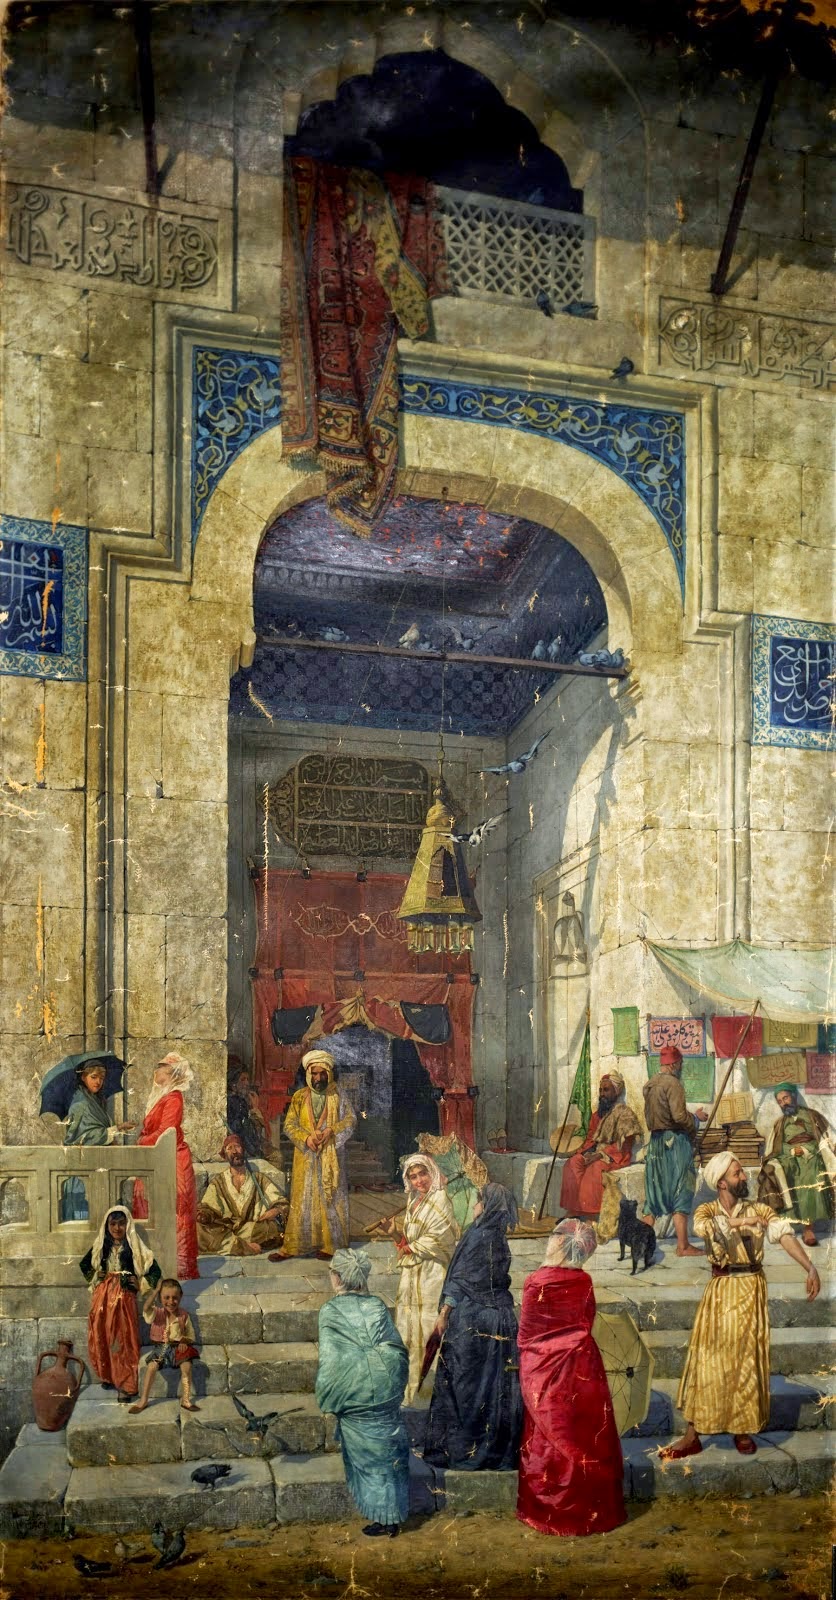 Osman Hamdi Bey - An Ottoman Empire Painter (1842-1910) - Fine Art and You